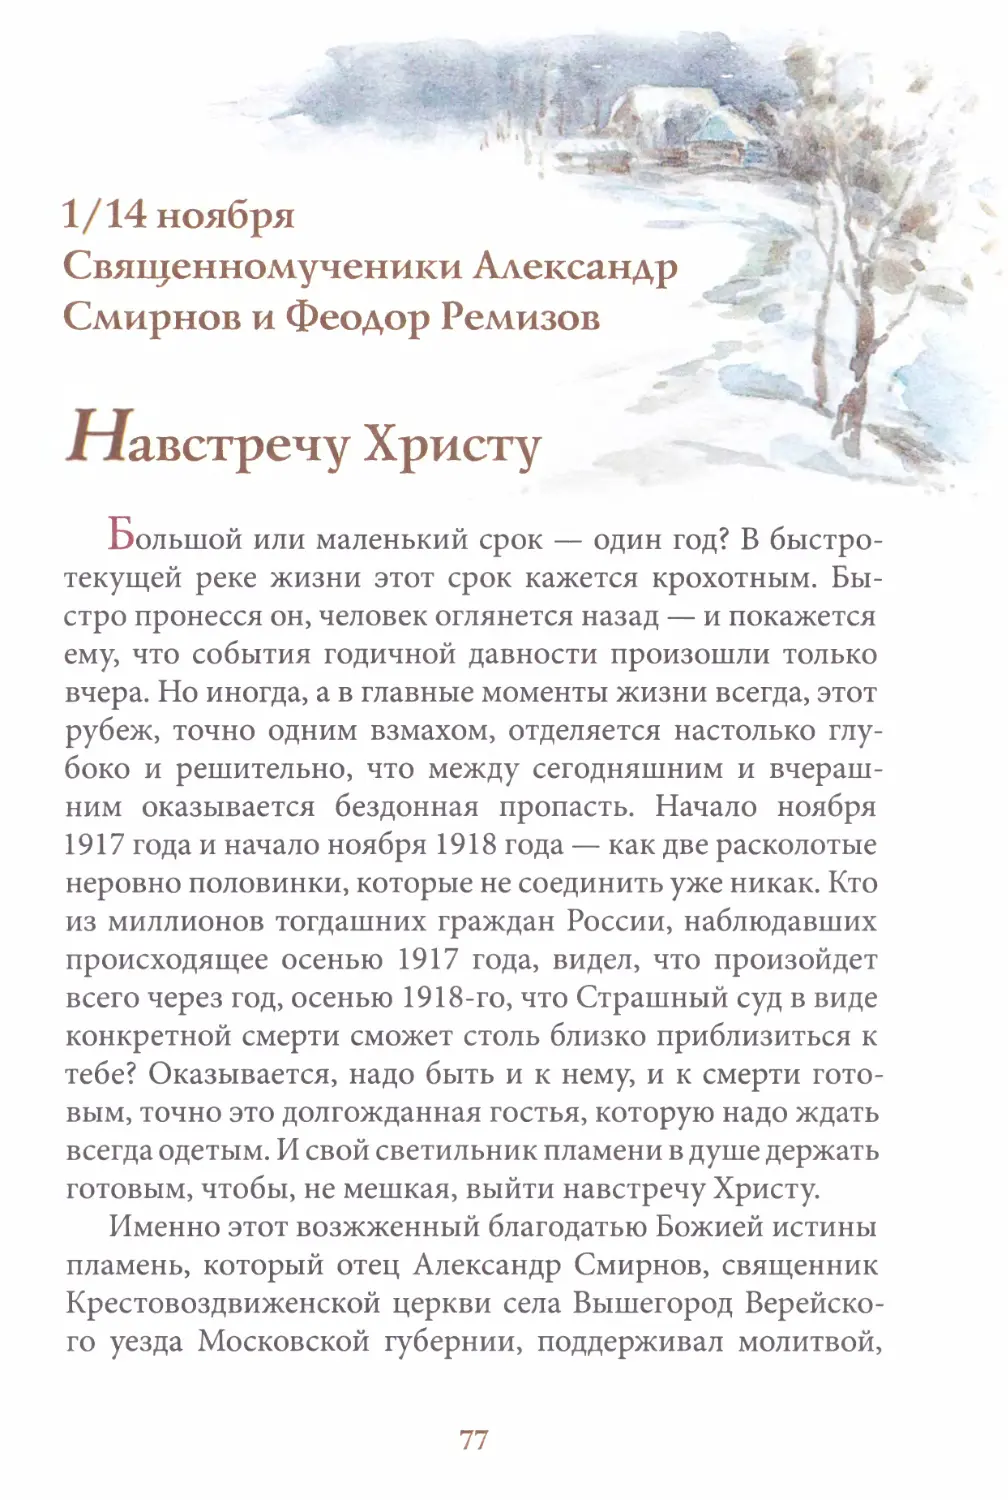 Священномученики Александр Смирнов и Феодор Ремизов. 1/14 ноября